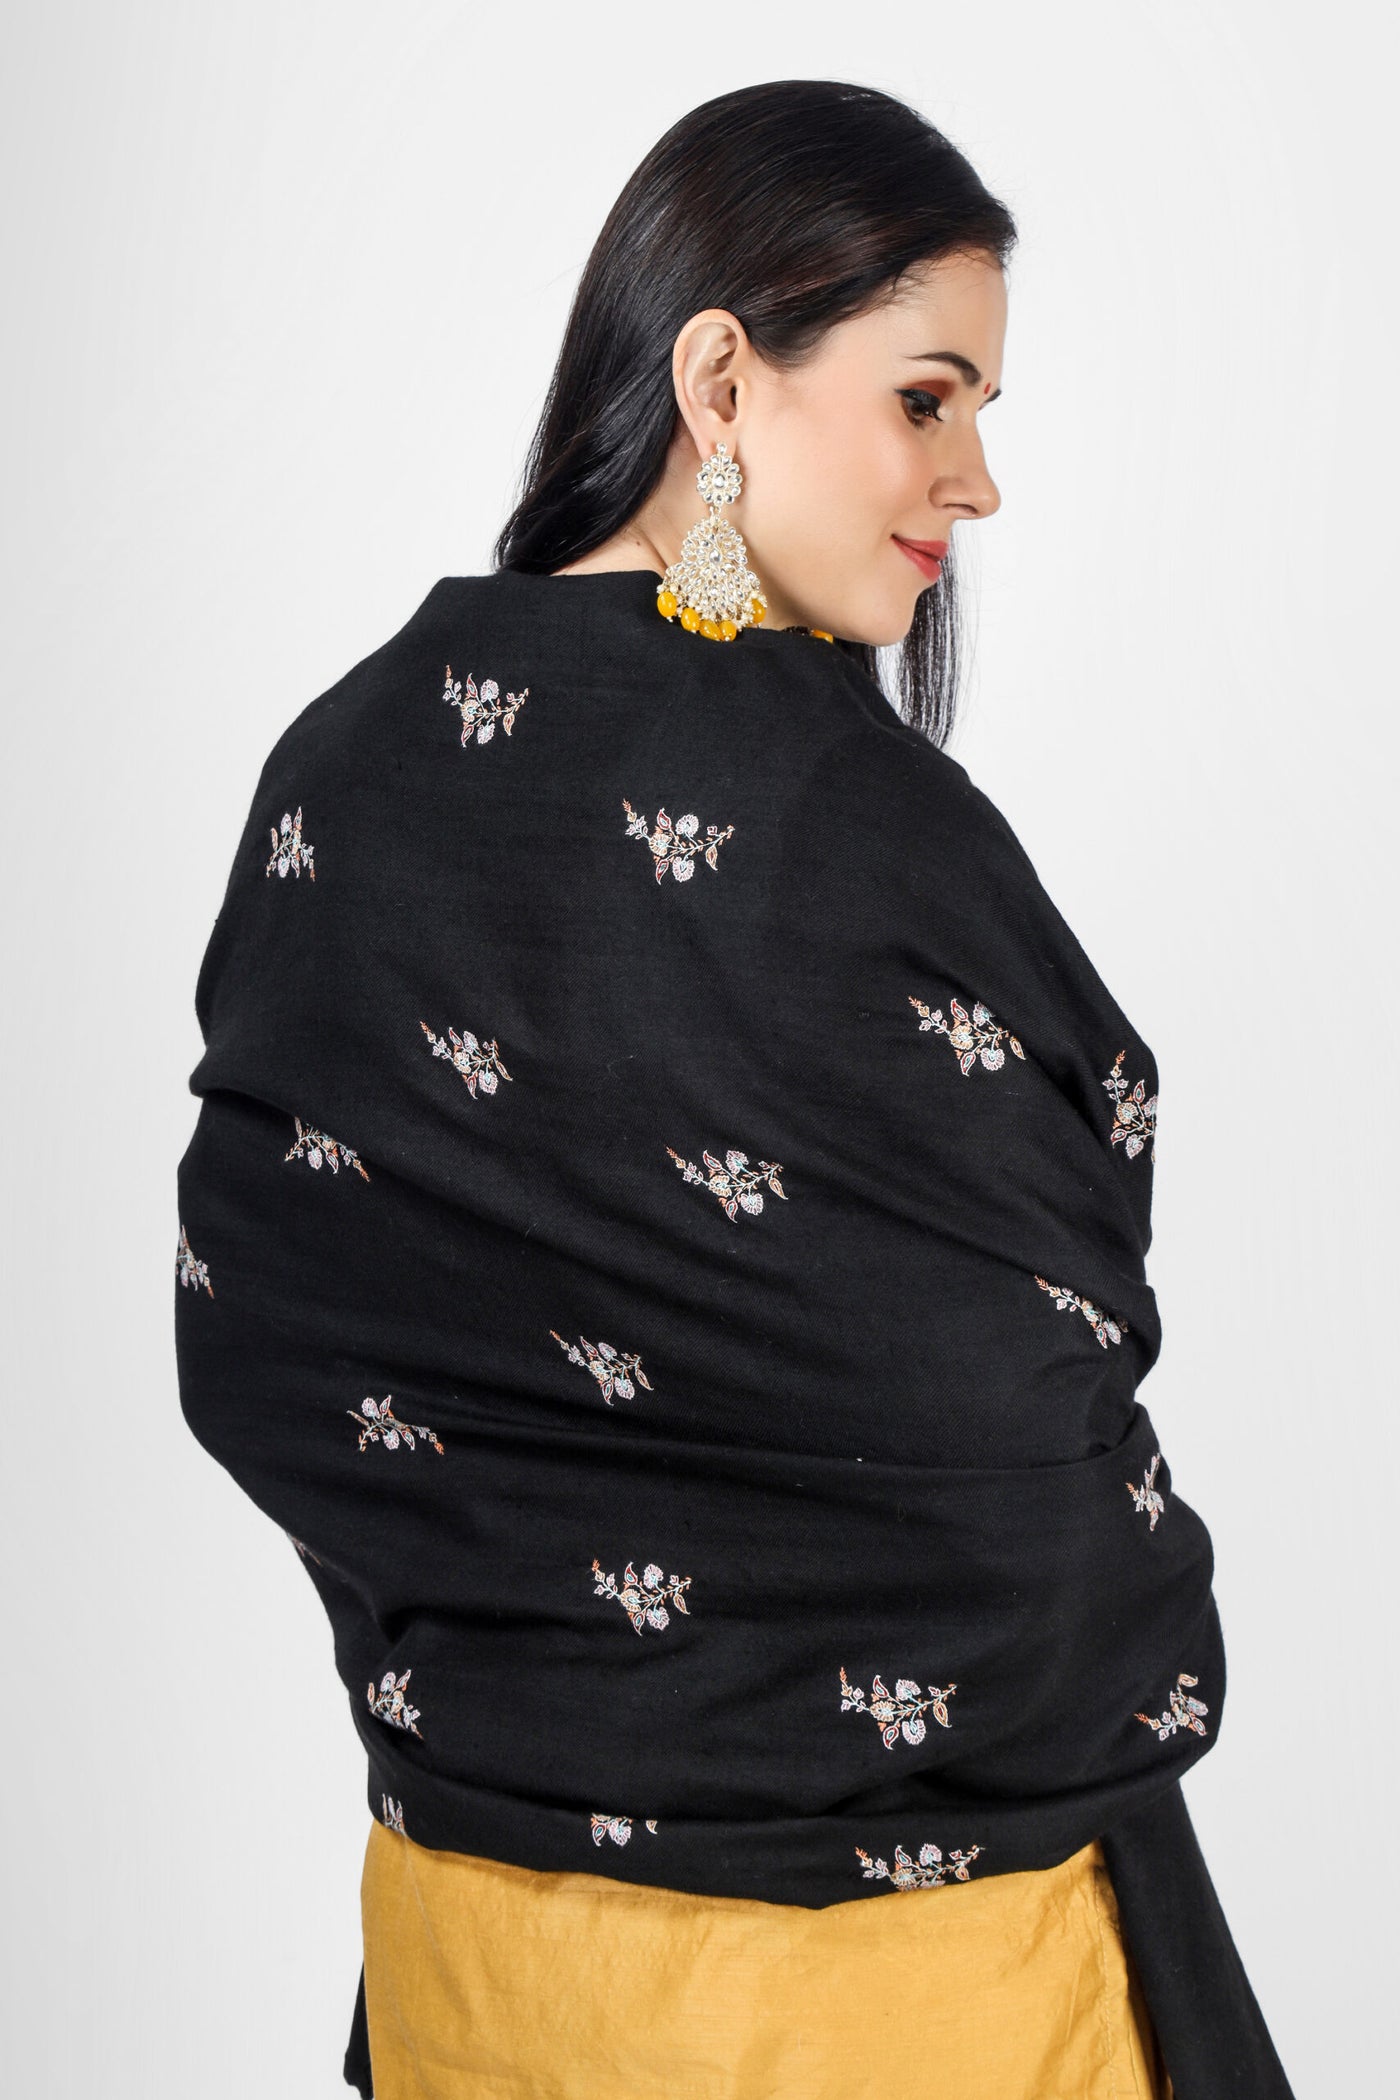 Black Pashmina medium Bootidaar sozni shawl